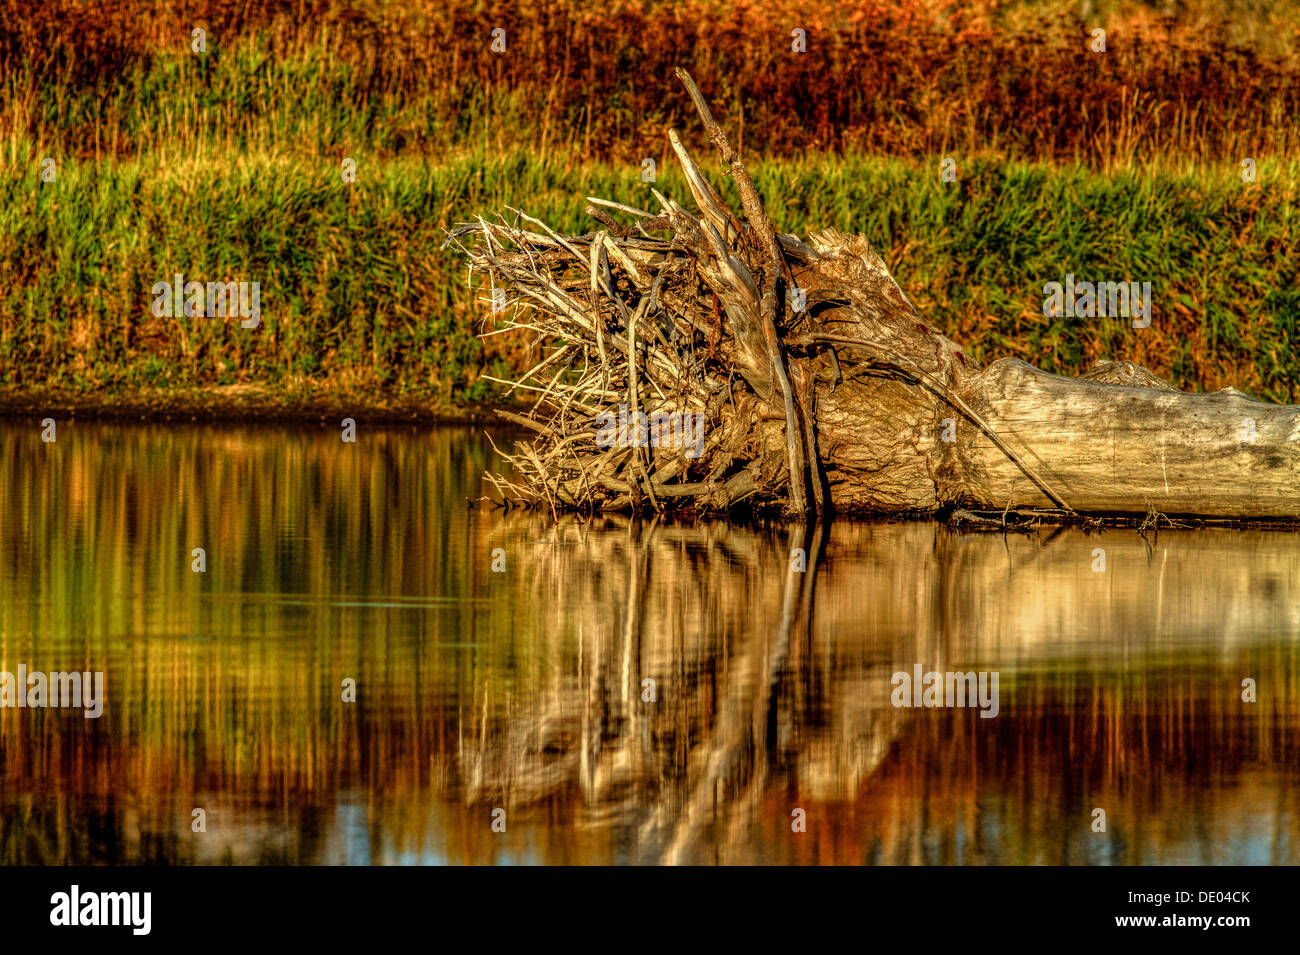 Paysage de vieux, arborescence racine en fixant le long du littoral, qui se reflète dans la rivière Bow avec de belles couleurs d'automne. Photo paysage calme Banque D'Images